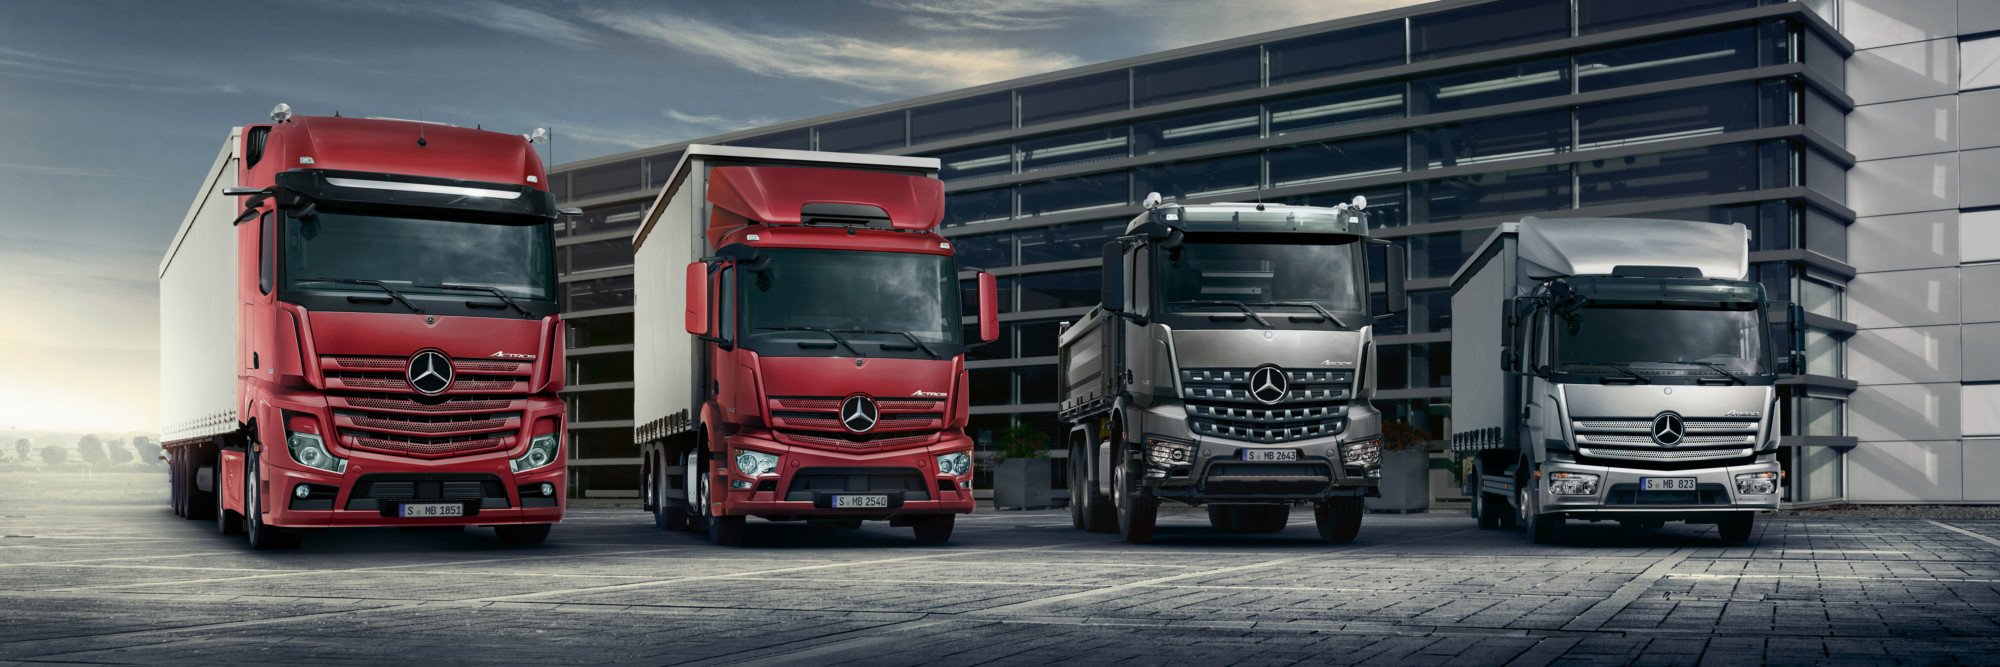 Trucks range modellen 4000x1333